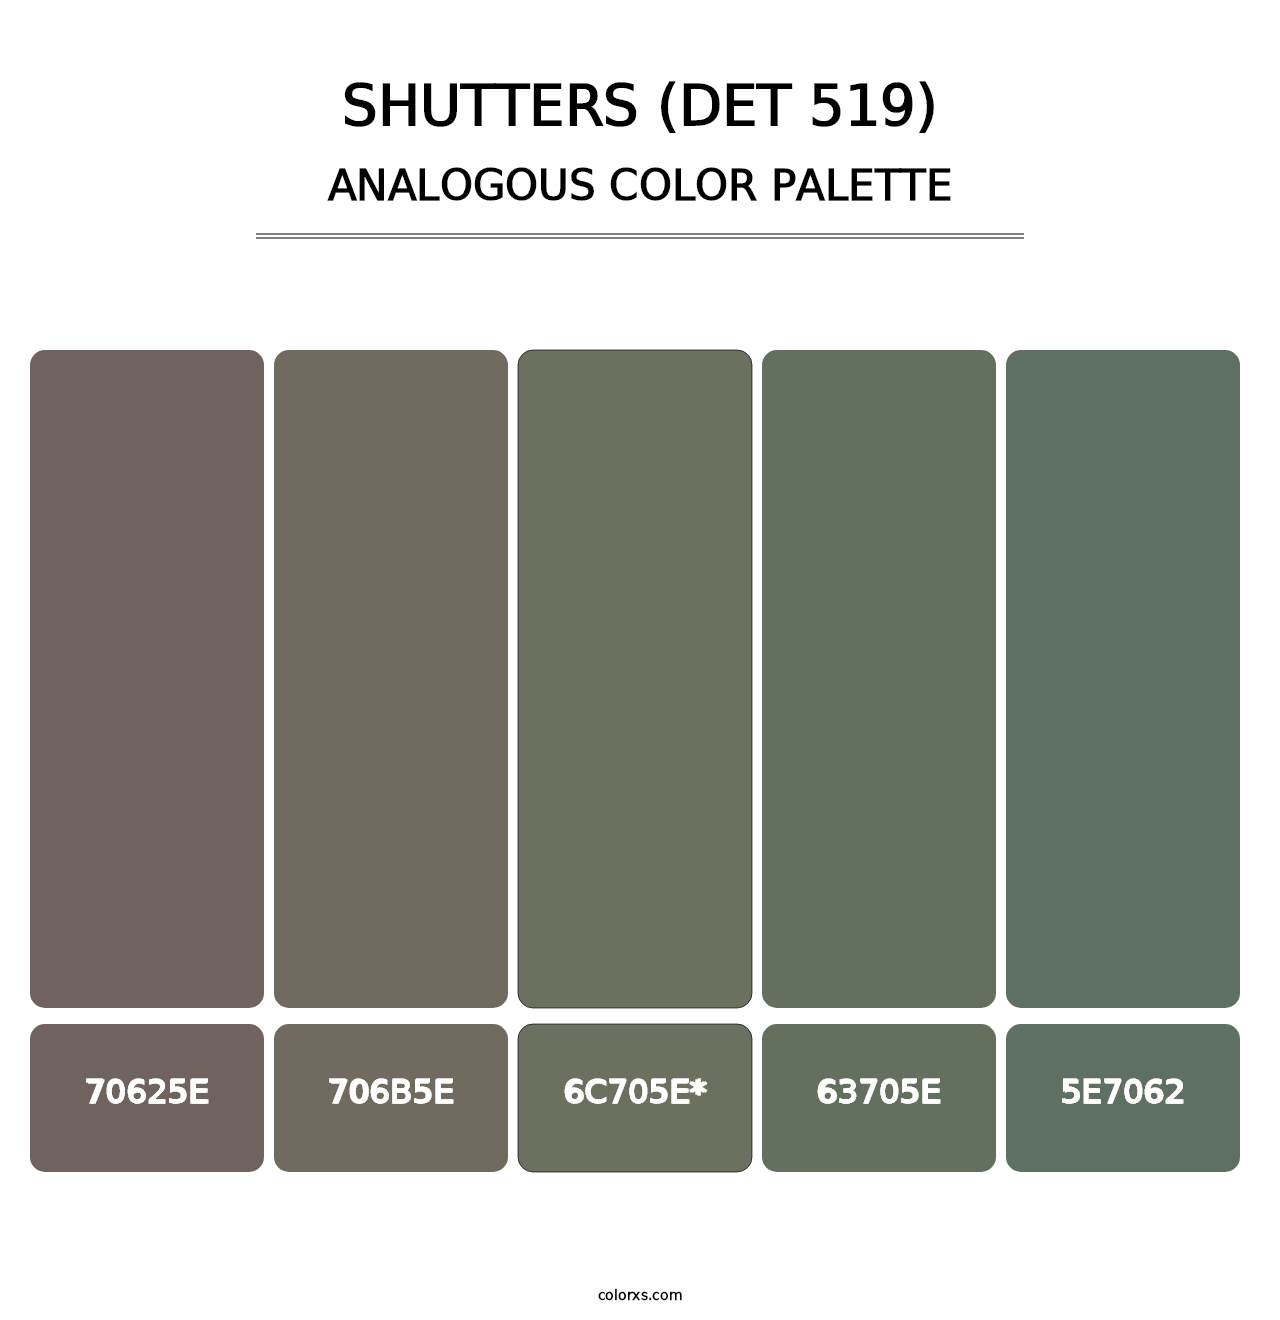 Shutters (DET 519) - Analogous Color Palette